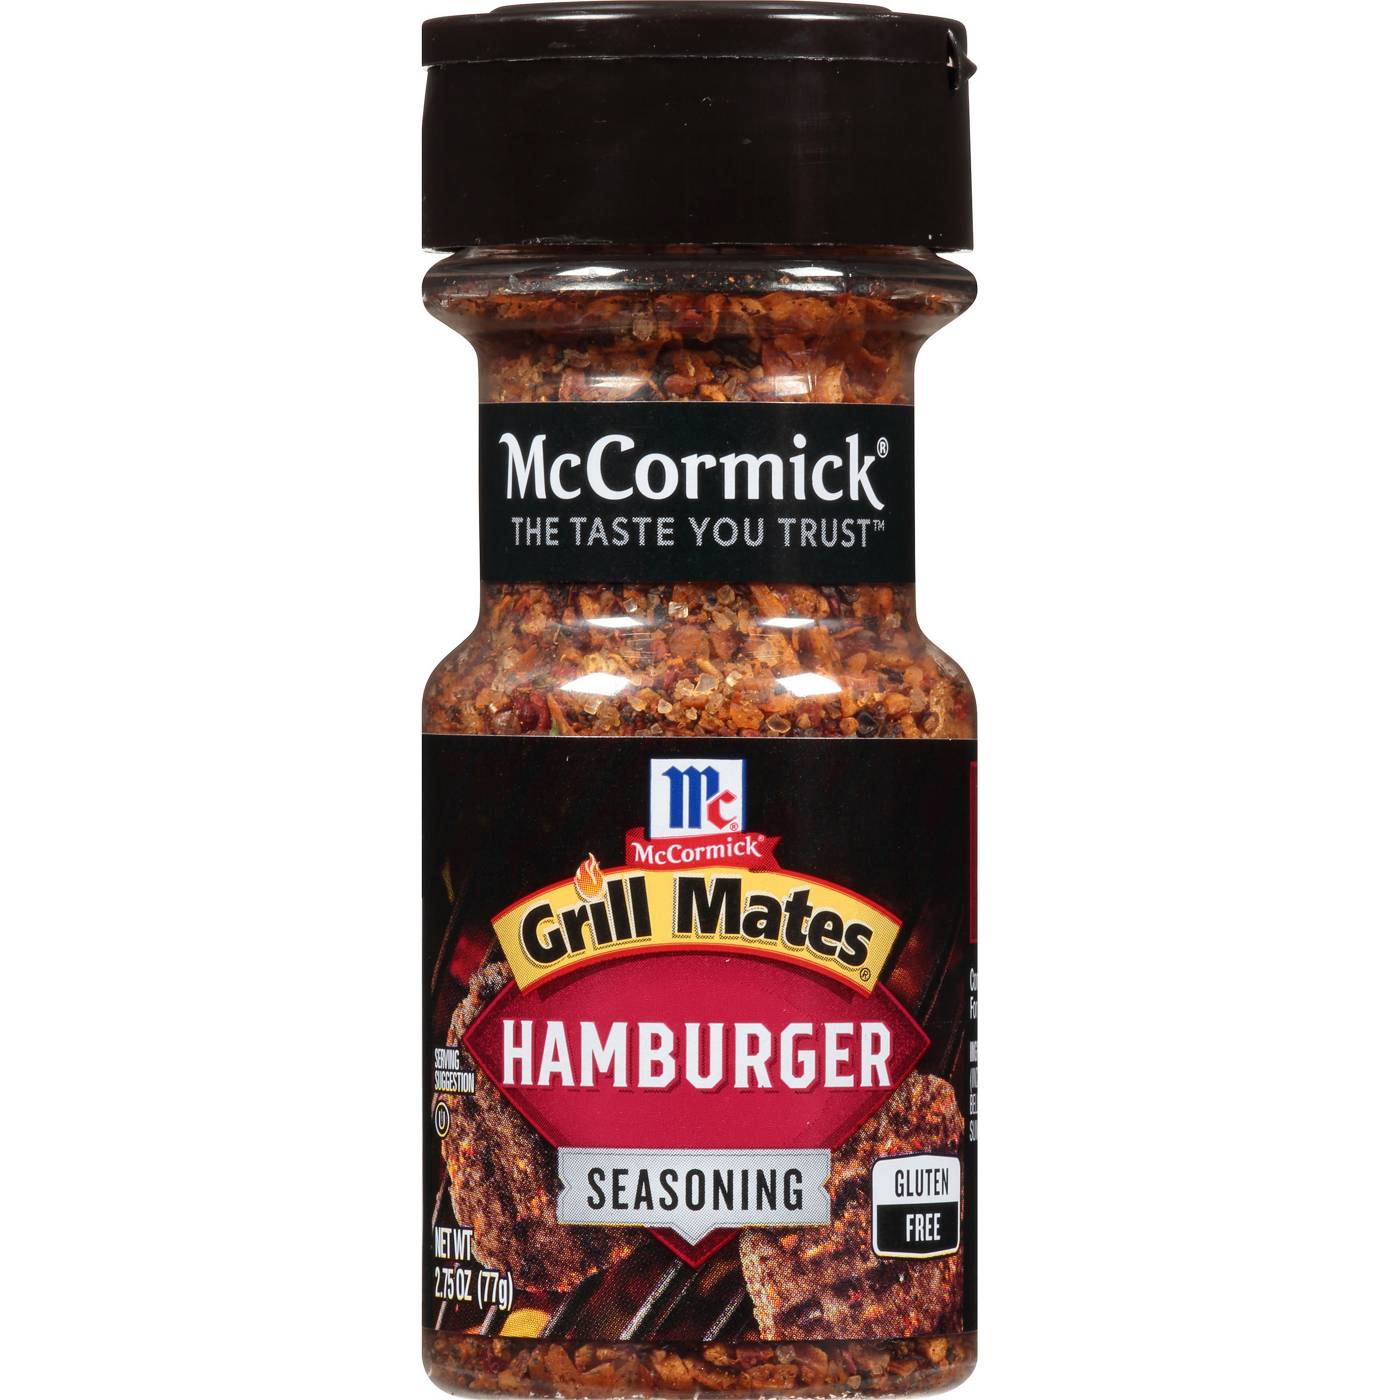 McCormick Grill Mates Hamburger Seasoning; image 1 of 7